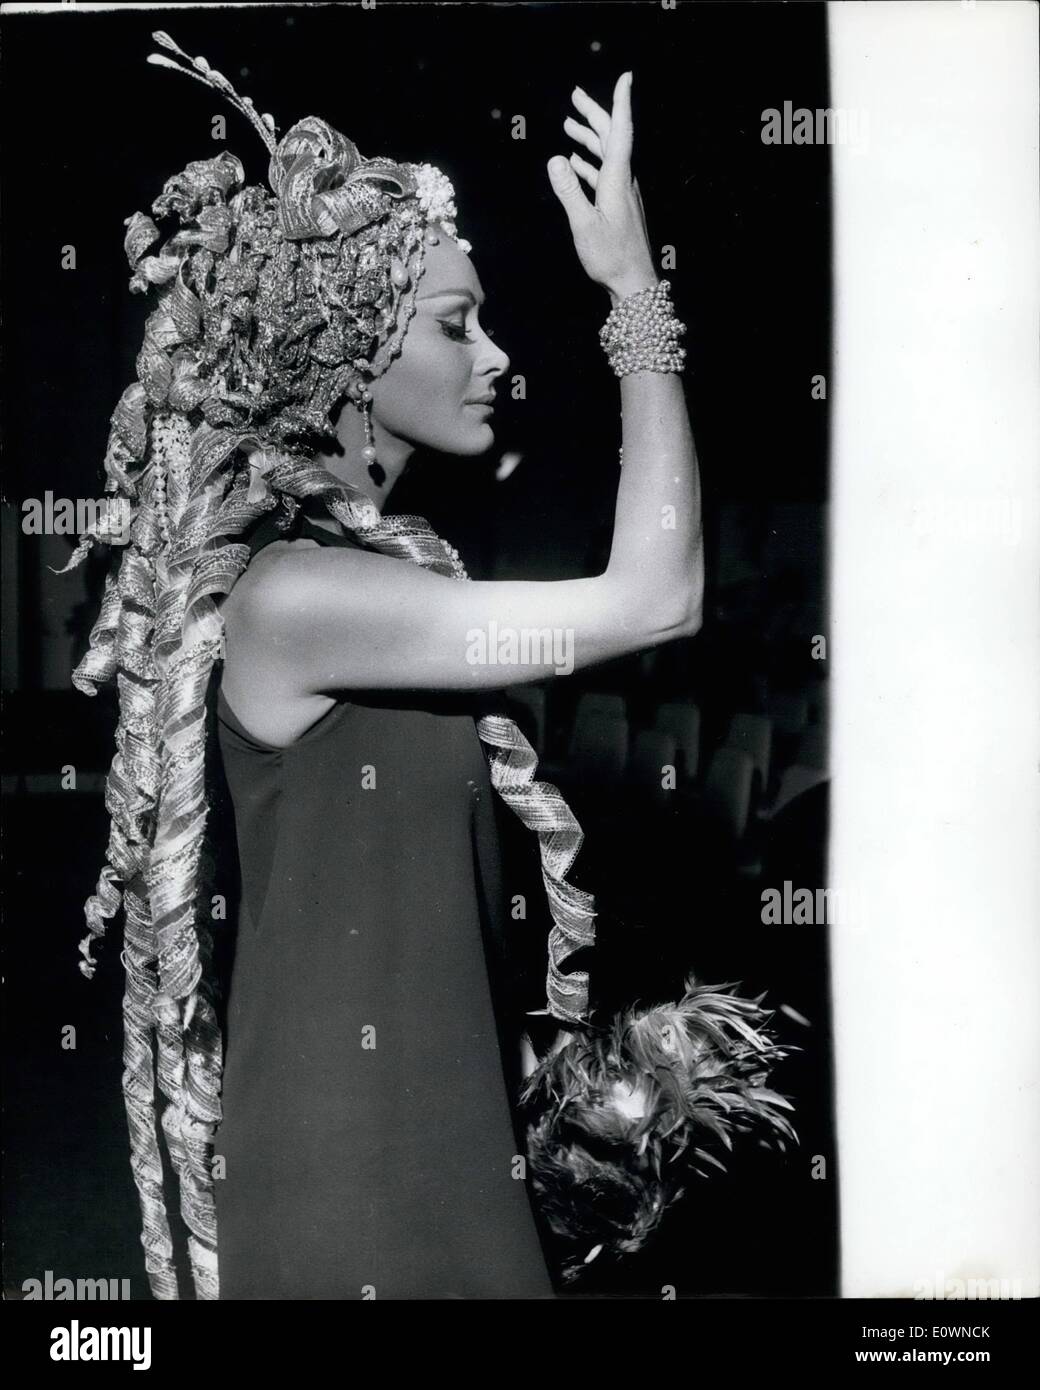 Ottobre 10, 1963 - La Bella e la bestia: uno della moda in mostra all'Hotel Hilton di ieri per la moda premi Mostra stato Foto Stock